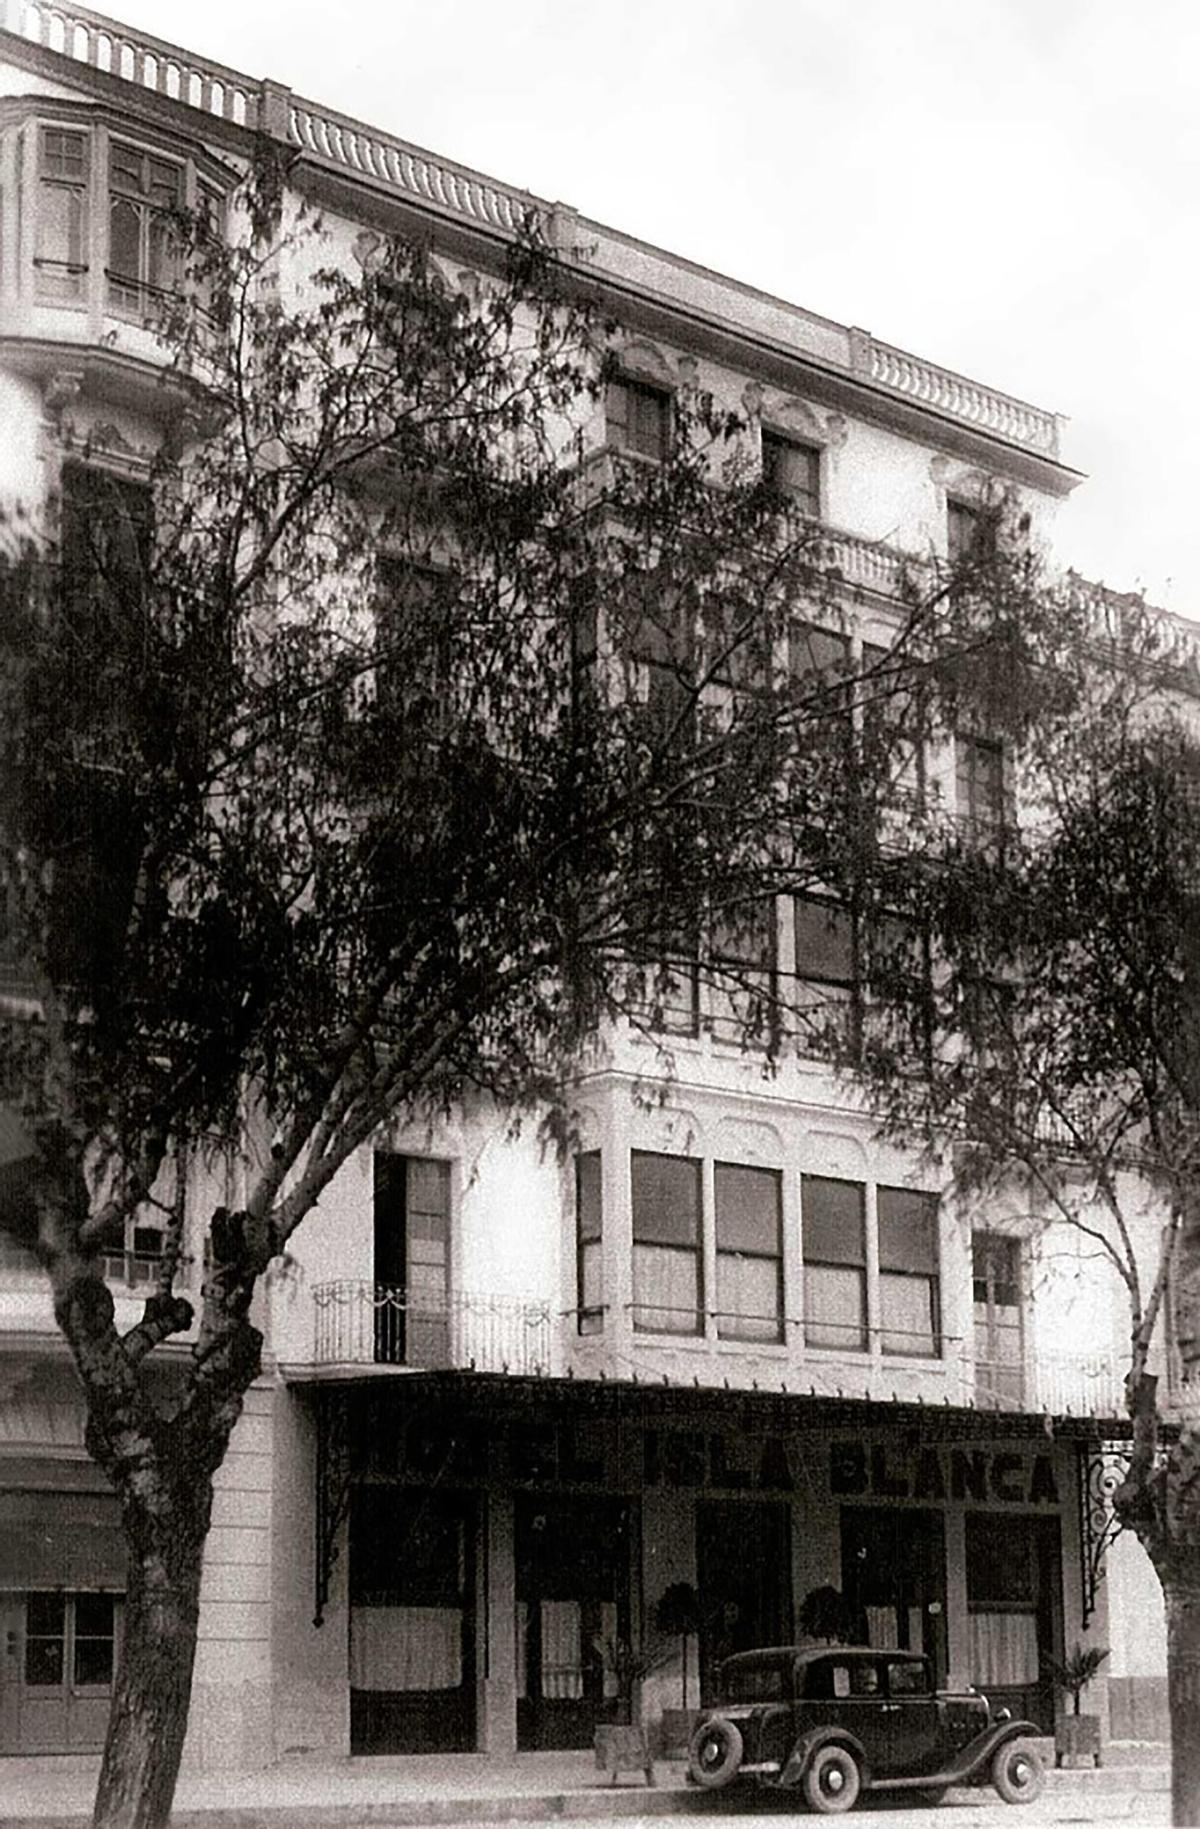 L’Hotel Isla Blanca. El 1947 els baixos de l’edifici foren adquirits per la societat cultural i recreativa Ebusus. Durant anys, acollí l’Institut d’Estudis Eivissencs.